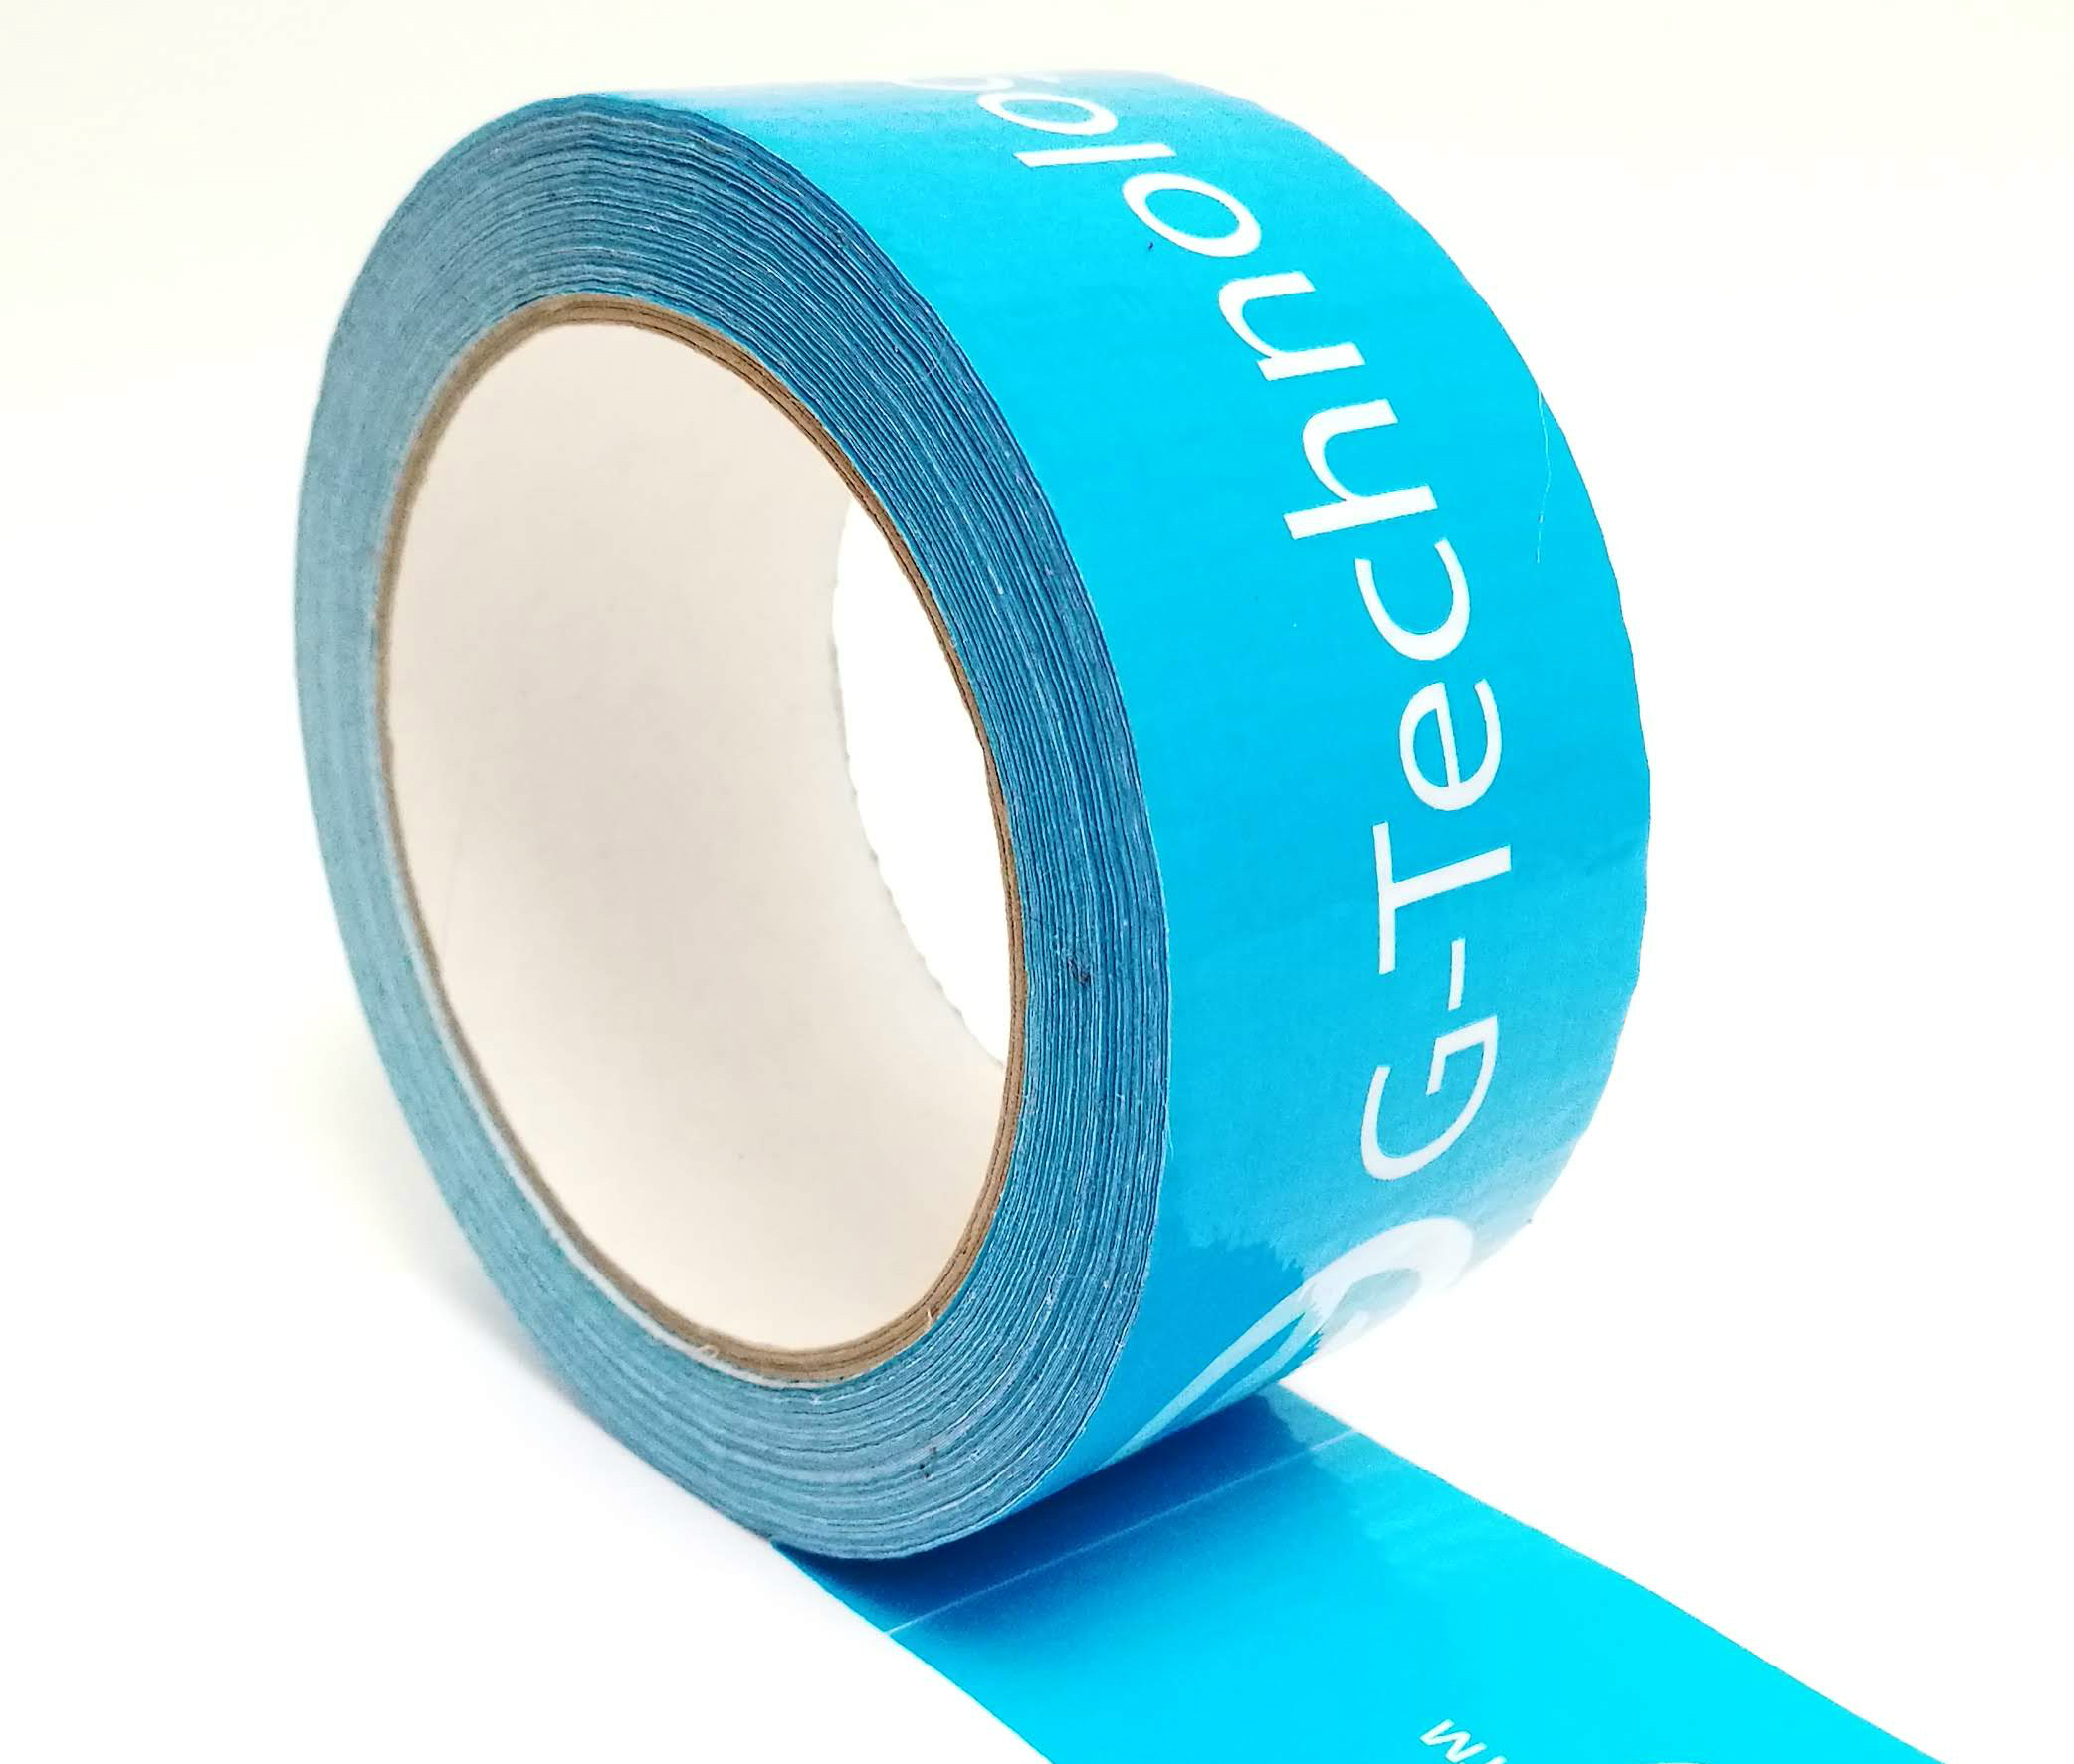 Novinka - potlačená textilná lepiaca páska tzv. duct tape alebo duck tape